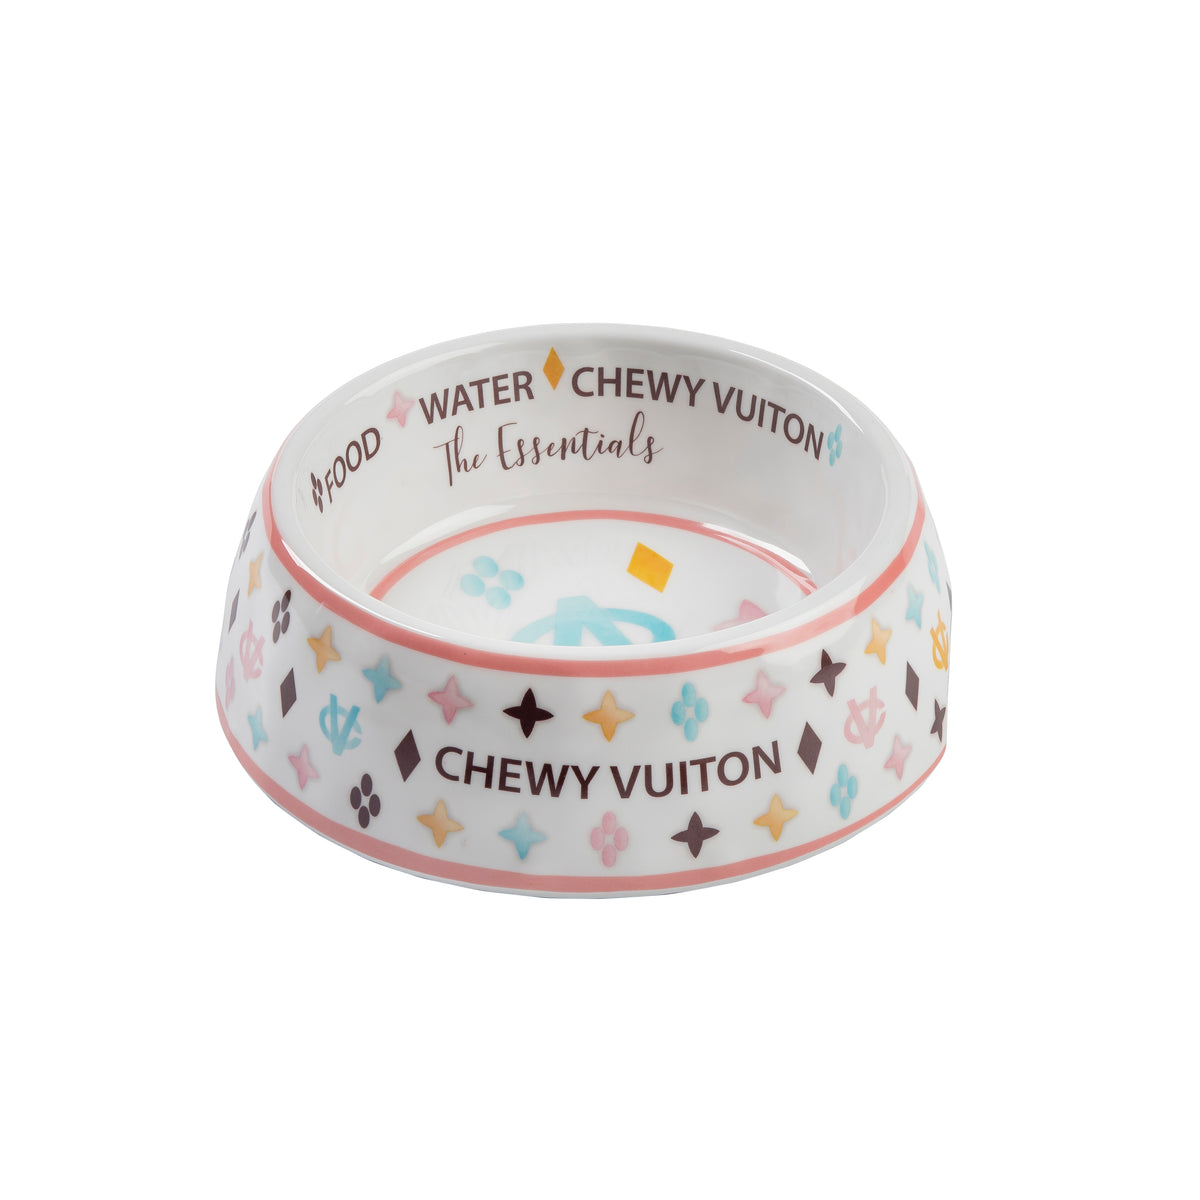 White Chewy Vuiton Bowl – Southern Paws